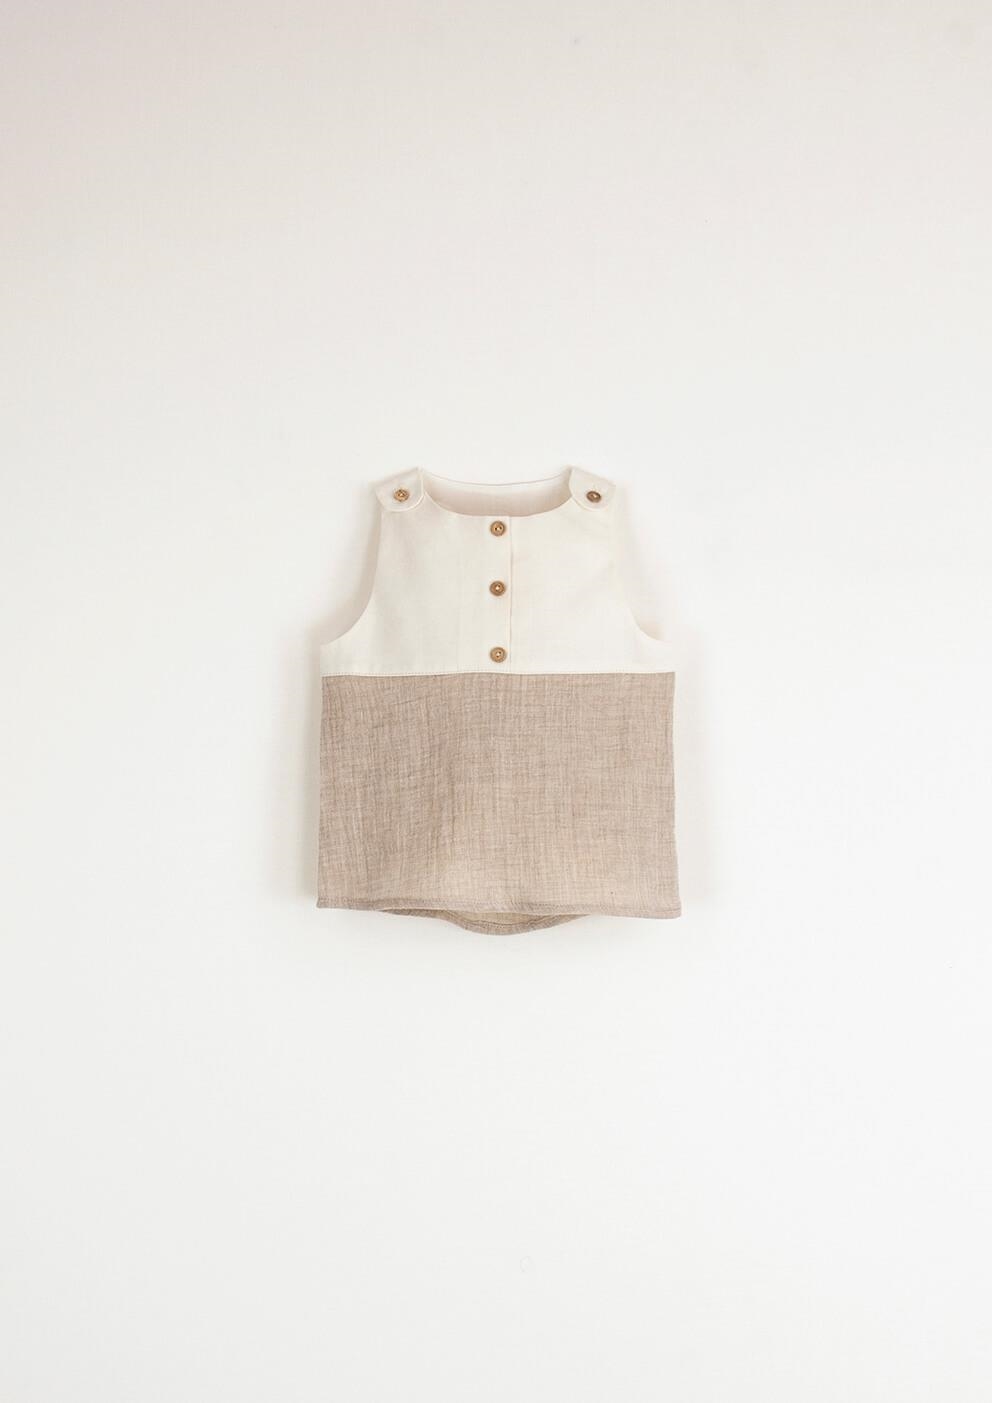 Mod.1.2 Sand sleeveless organic shirt | SS23 Mod.1.2 Sand sleeveless organic shirt